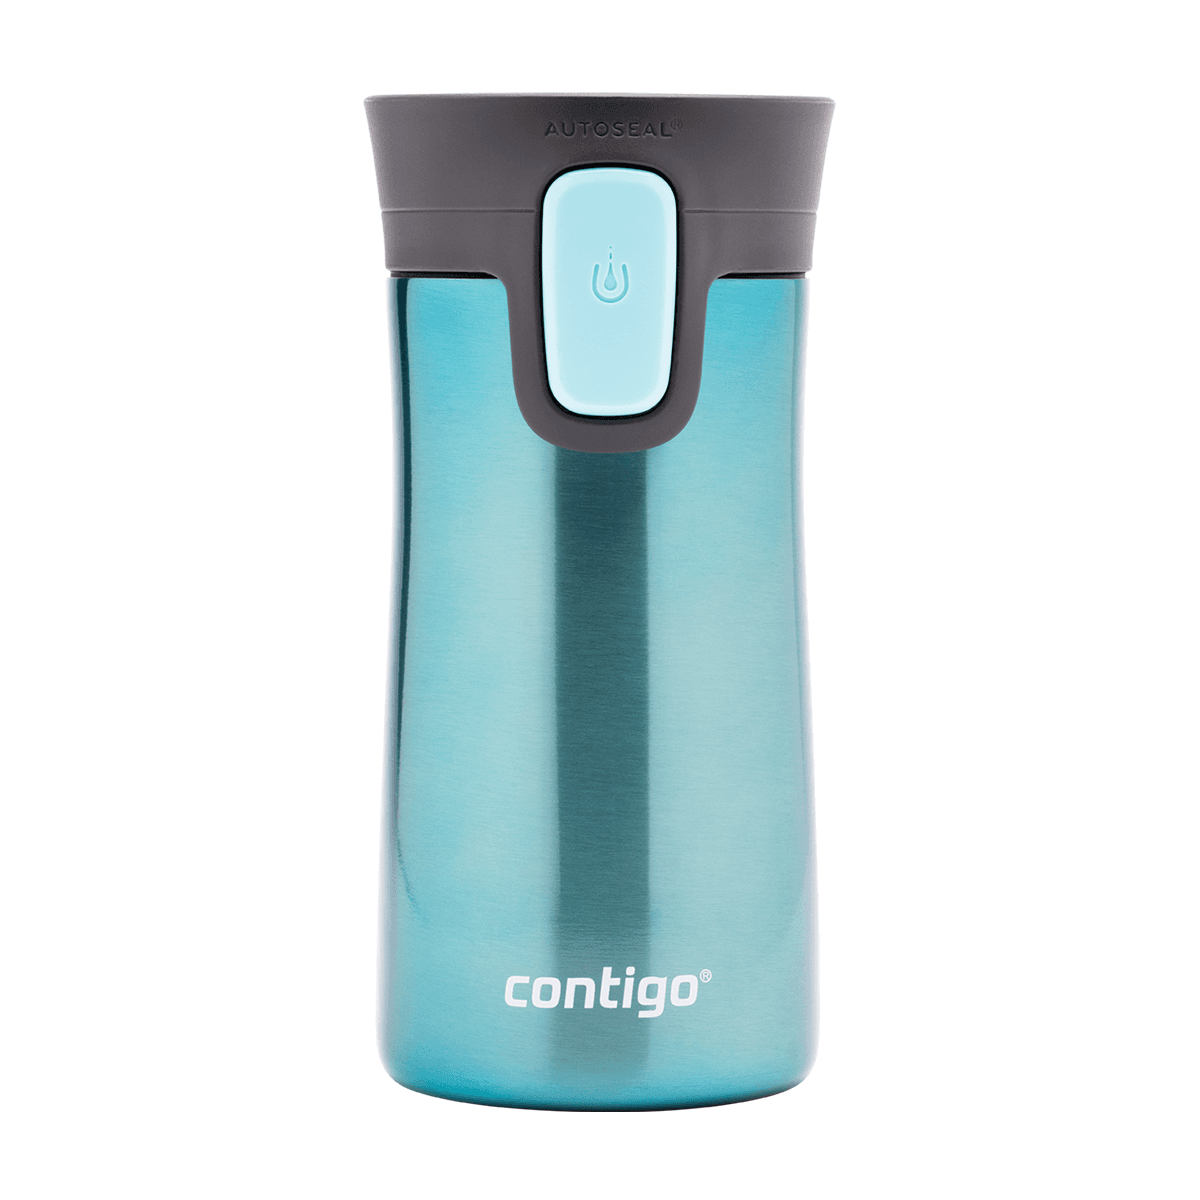 كوب حافظ للحرارة 300 مل ستانلس ستيل أزرق كونتيجو Contigo Tantalizing Blue Autoseal Pinnacle Vacuum Insulated Travel Mug